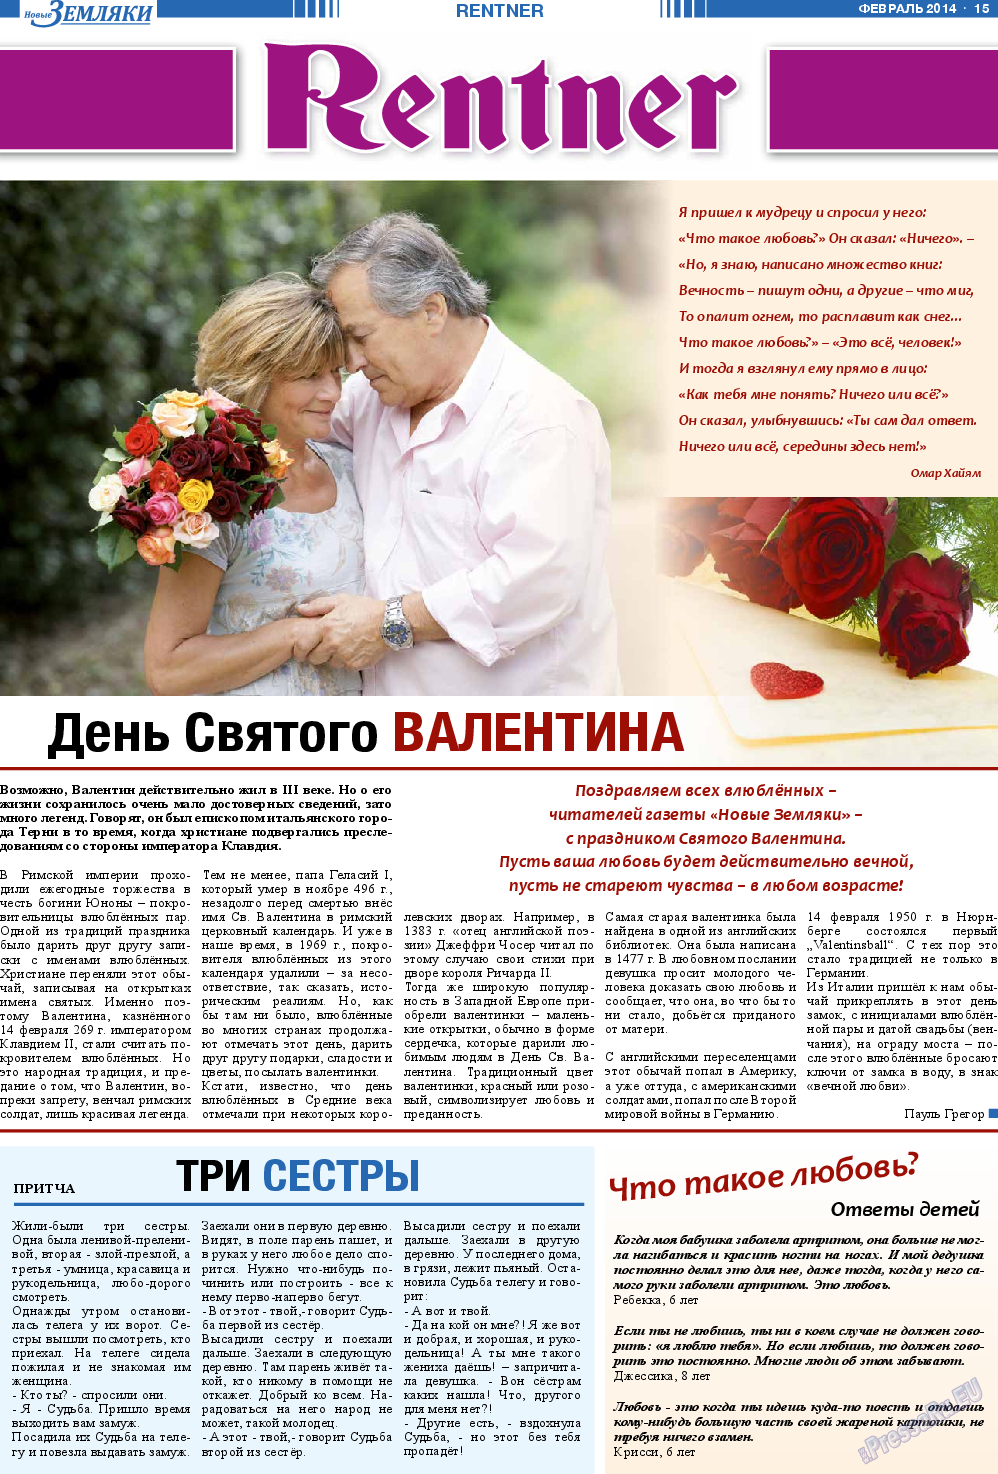 Новые Земляки, газета. 2014 №2 стр.15